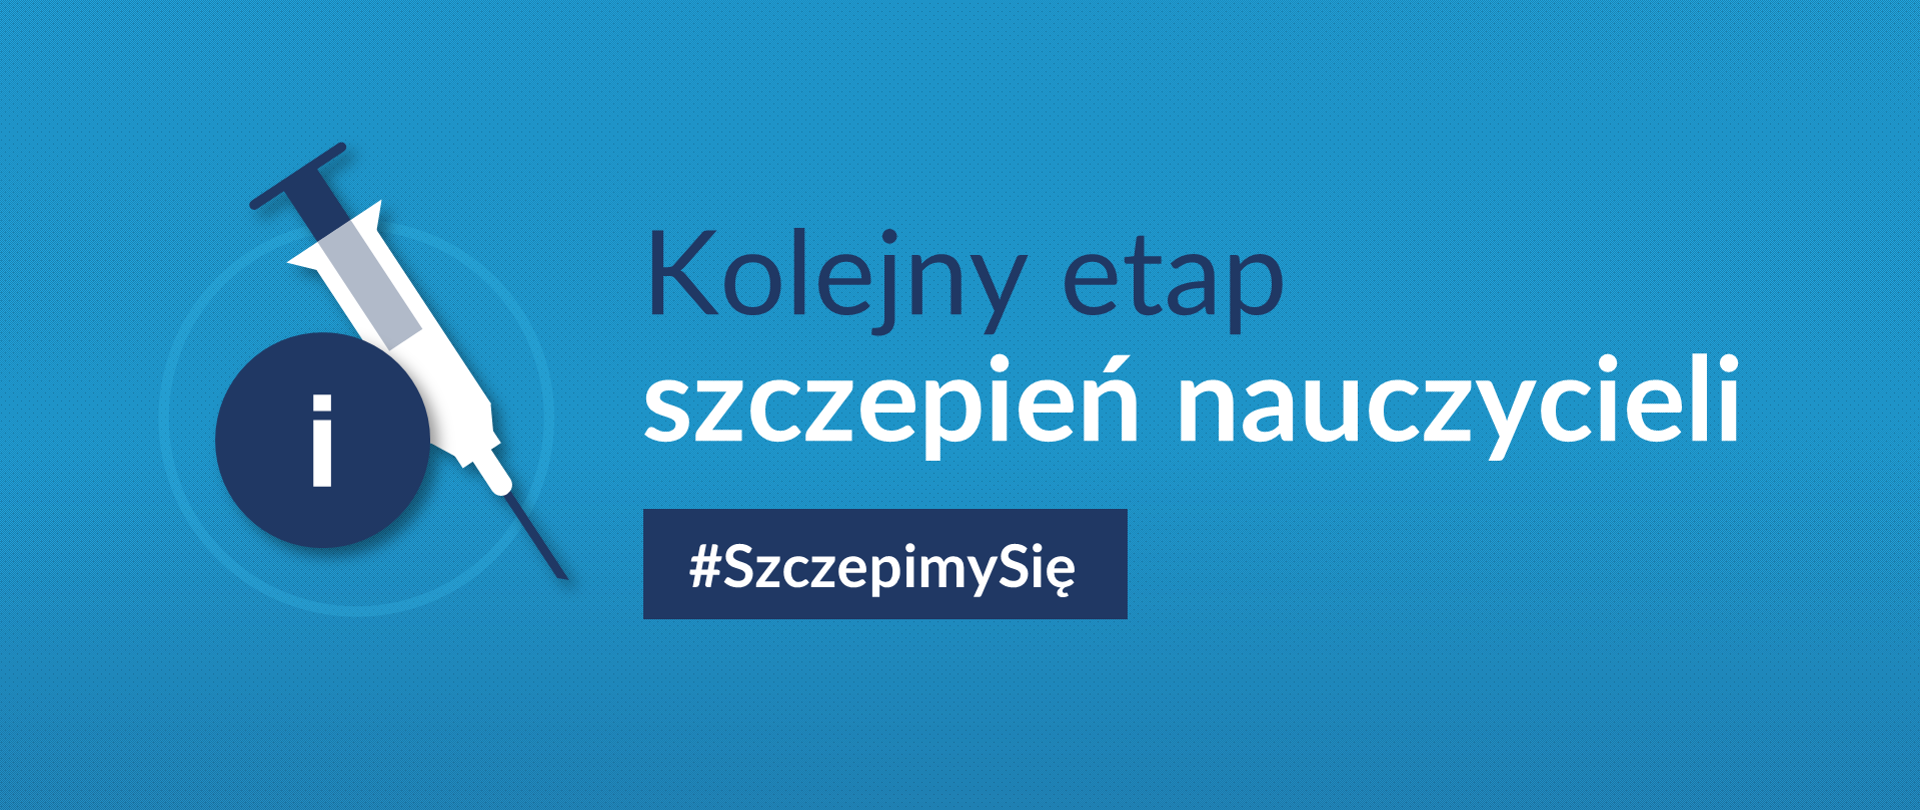 Grafika z hasłem: "Kolejny etap szczepień nauczycieli #SzczepimySię"